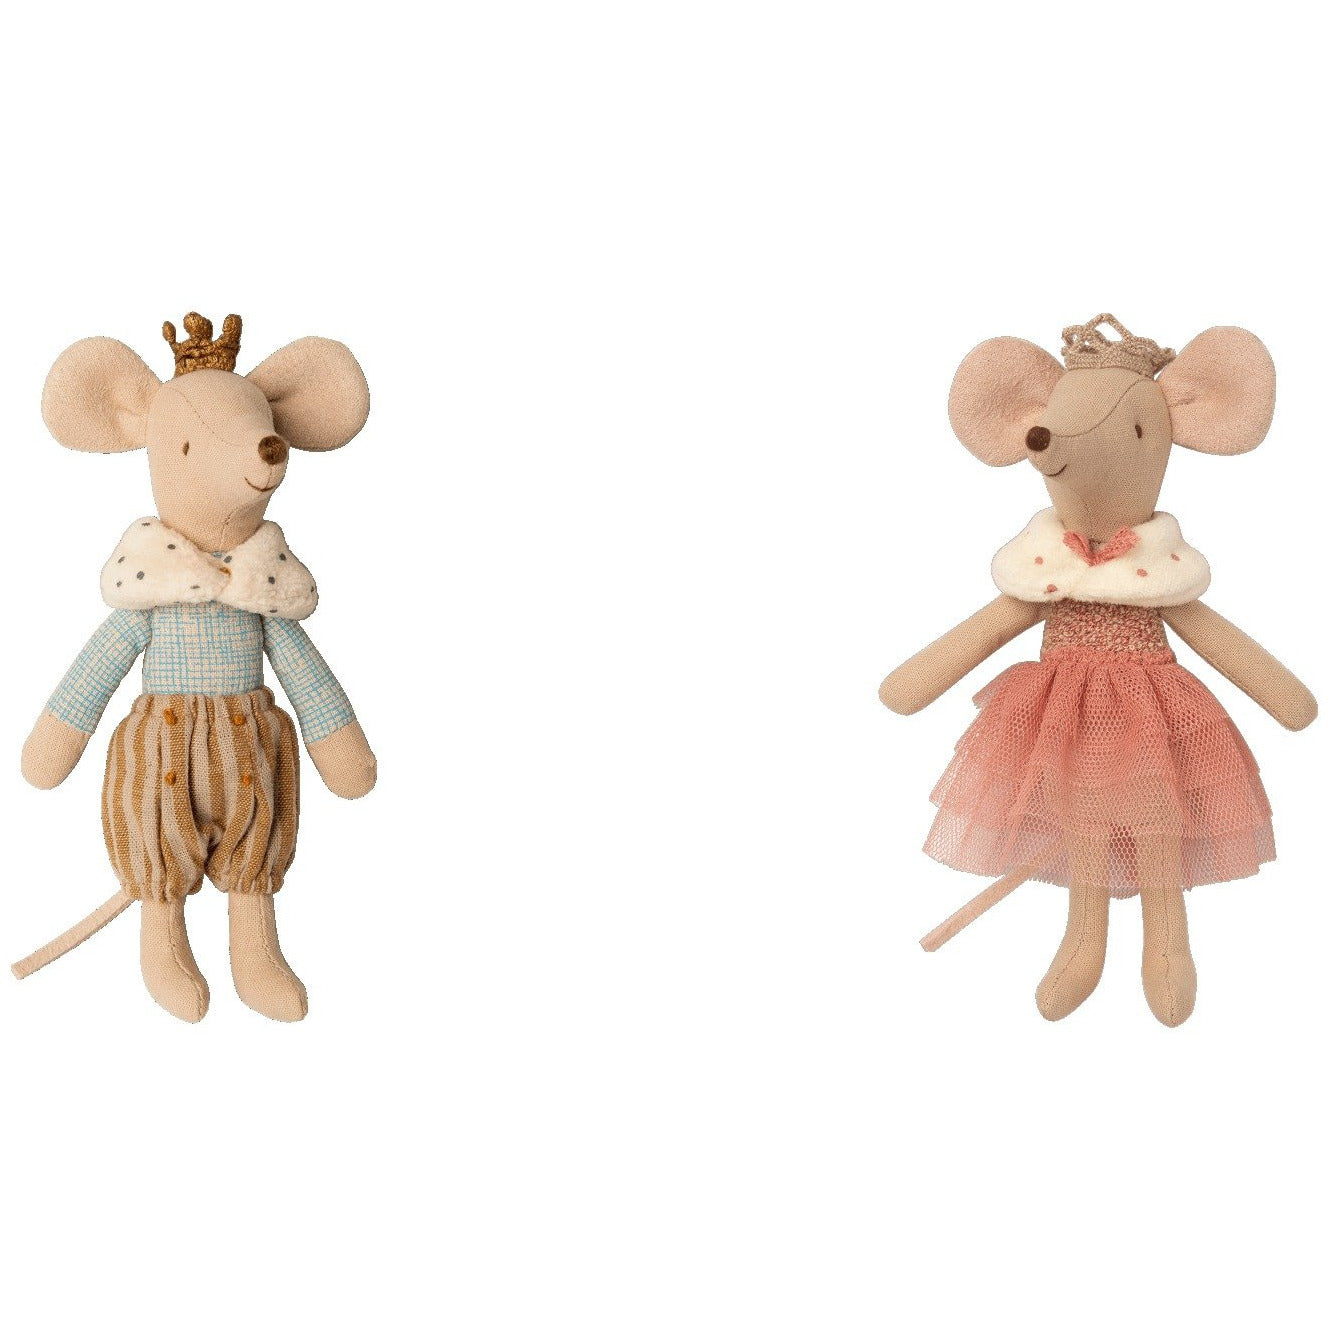 Prince mouse, Big brother or Princess mouse, Big sister